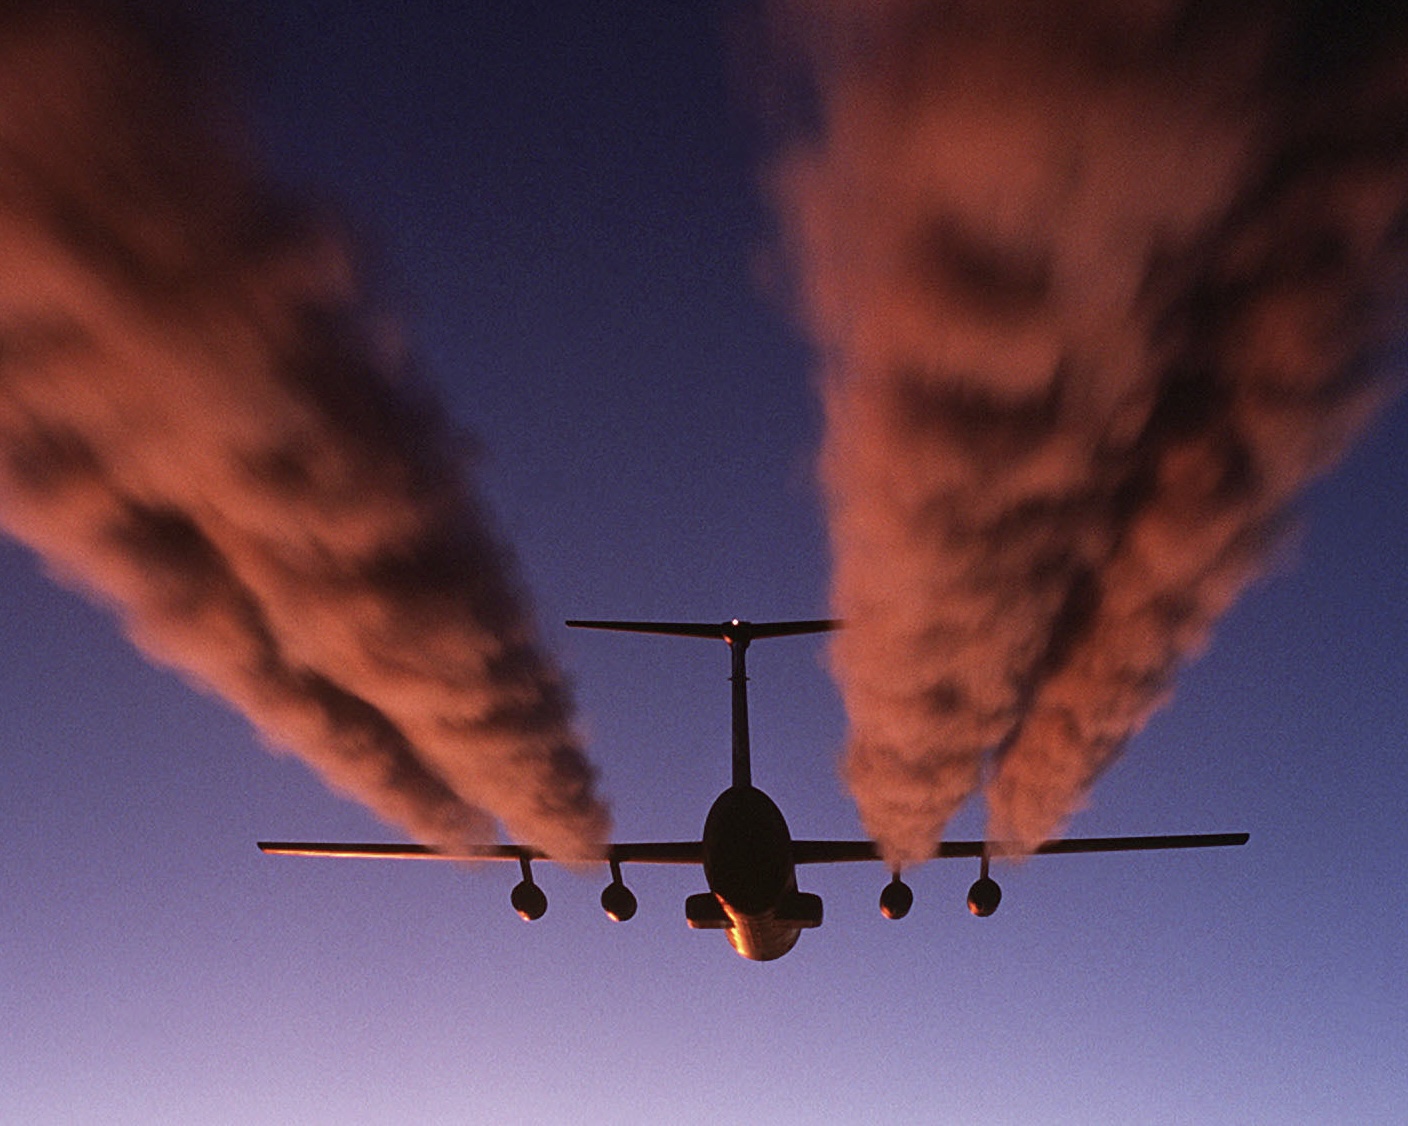 Ultrafeinstaub durch Luftverkehr – die ausgeblendete Gefahr!